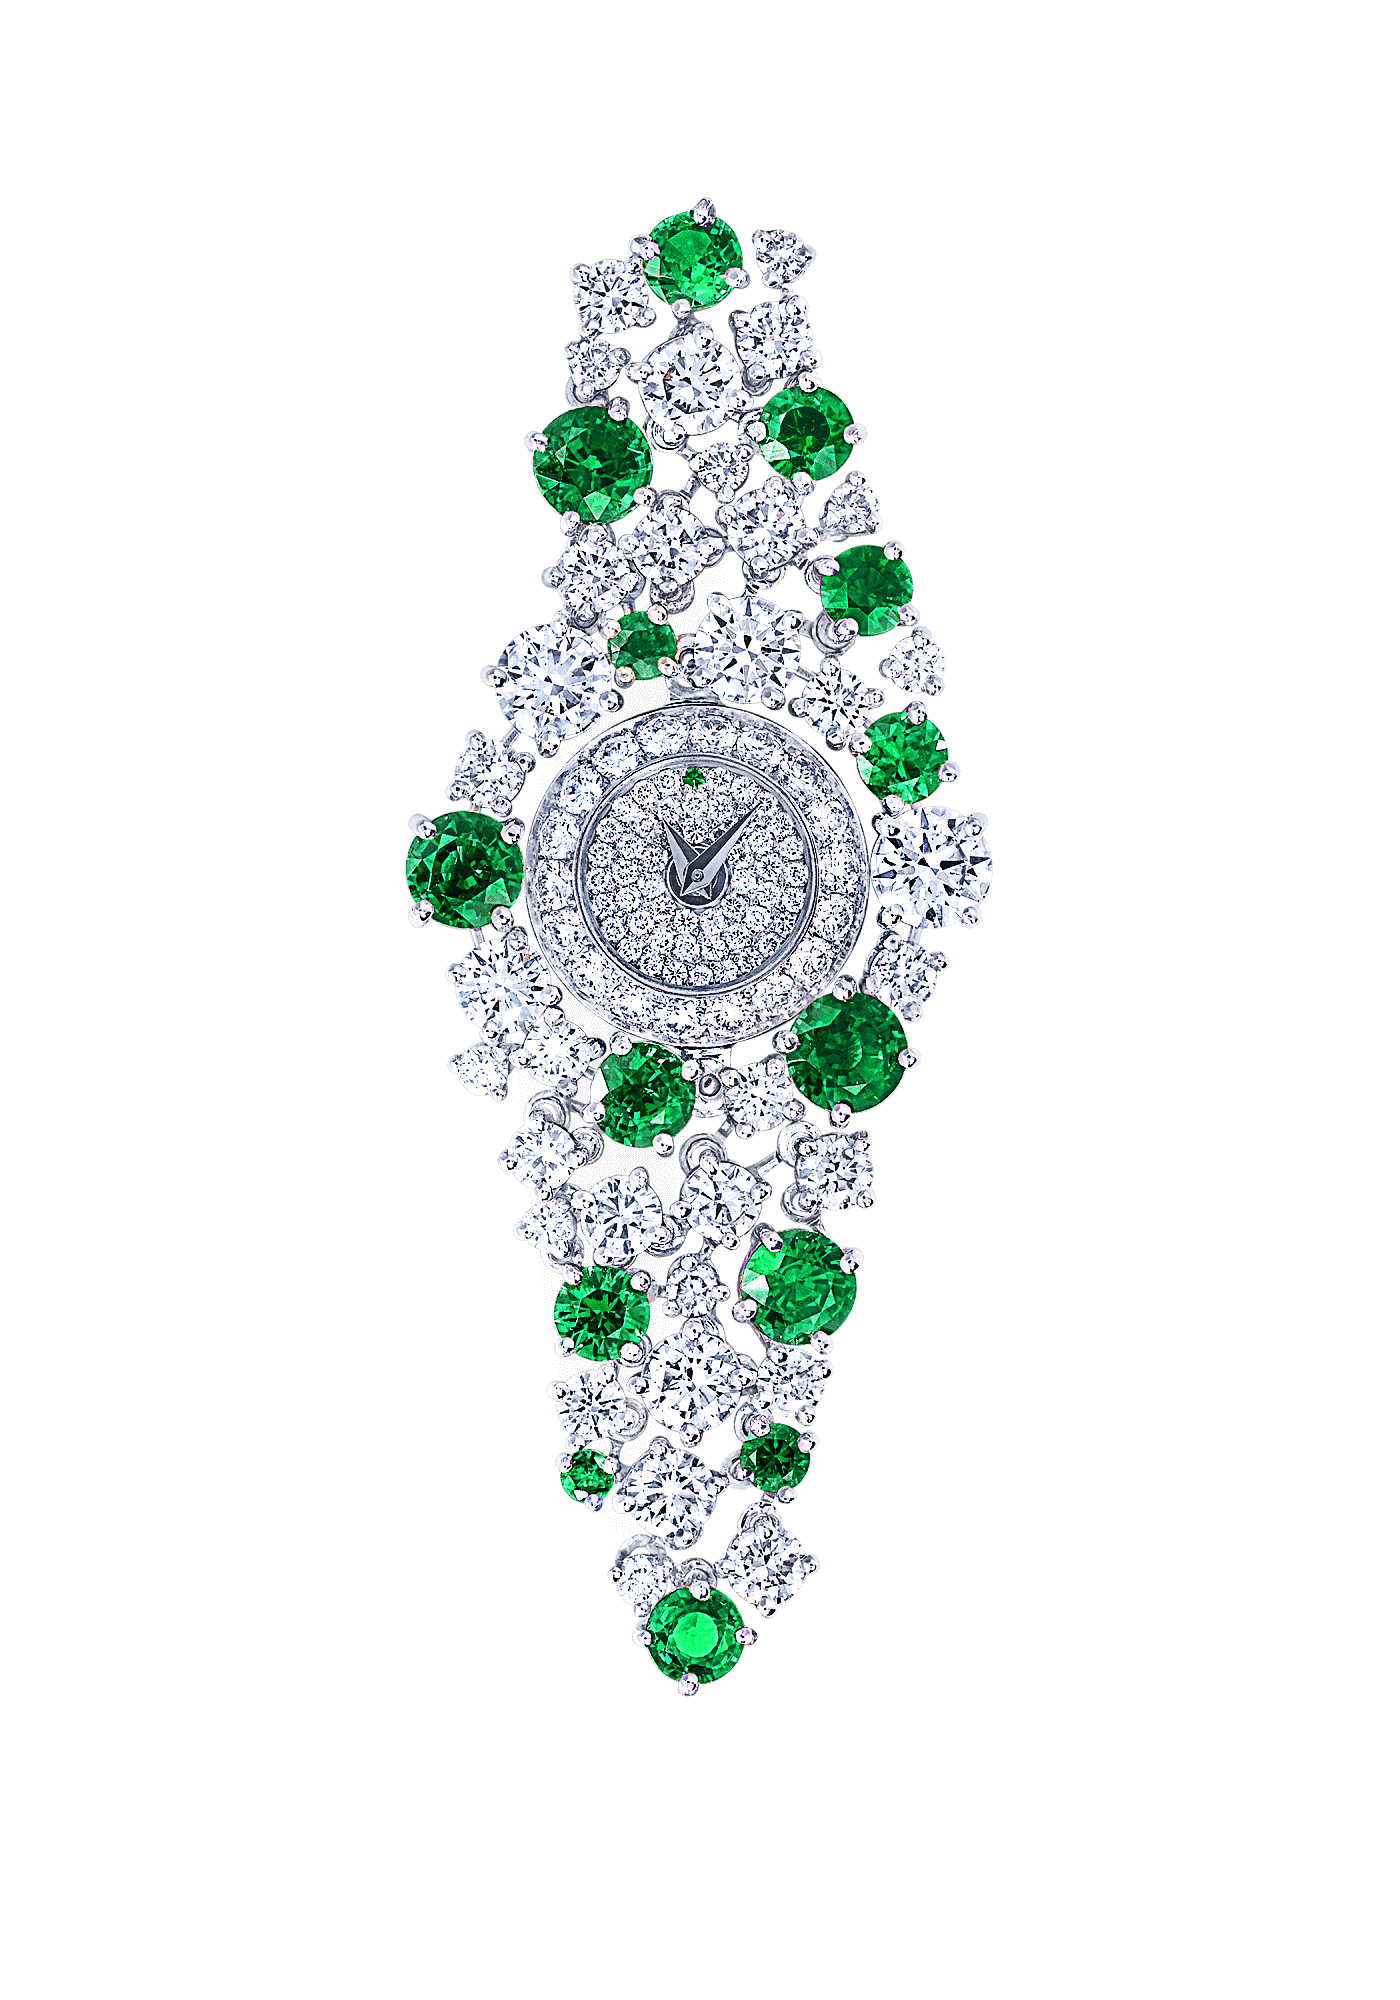 頂級珠寶品牌GRAFF “美呆了”的女性鑽石手表